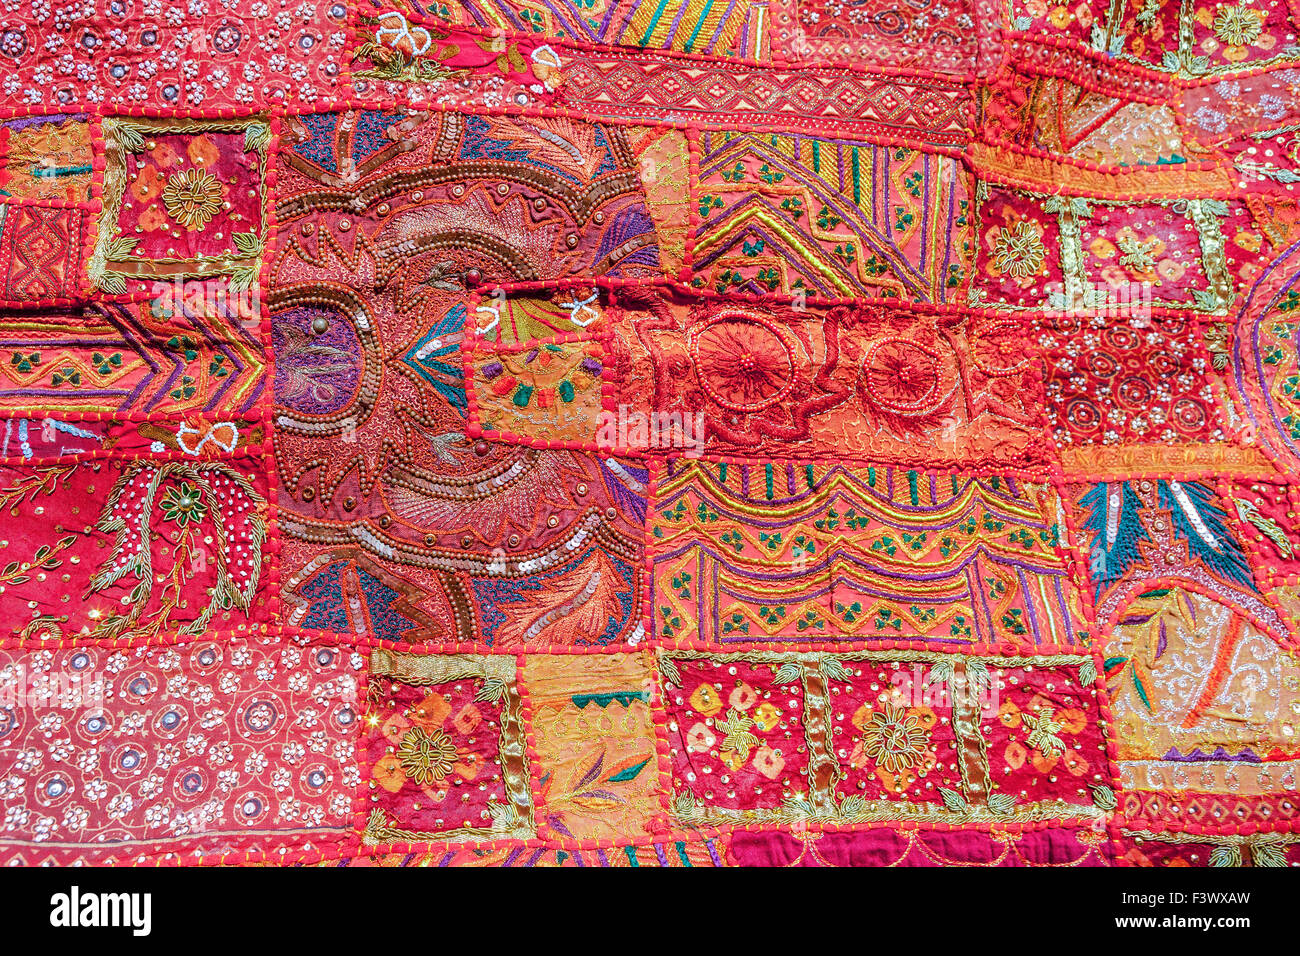 Indische Patchwork Teppich, Rajasthan, Indien, Asien Stockfotografie - Alamy